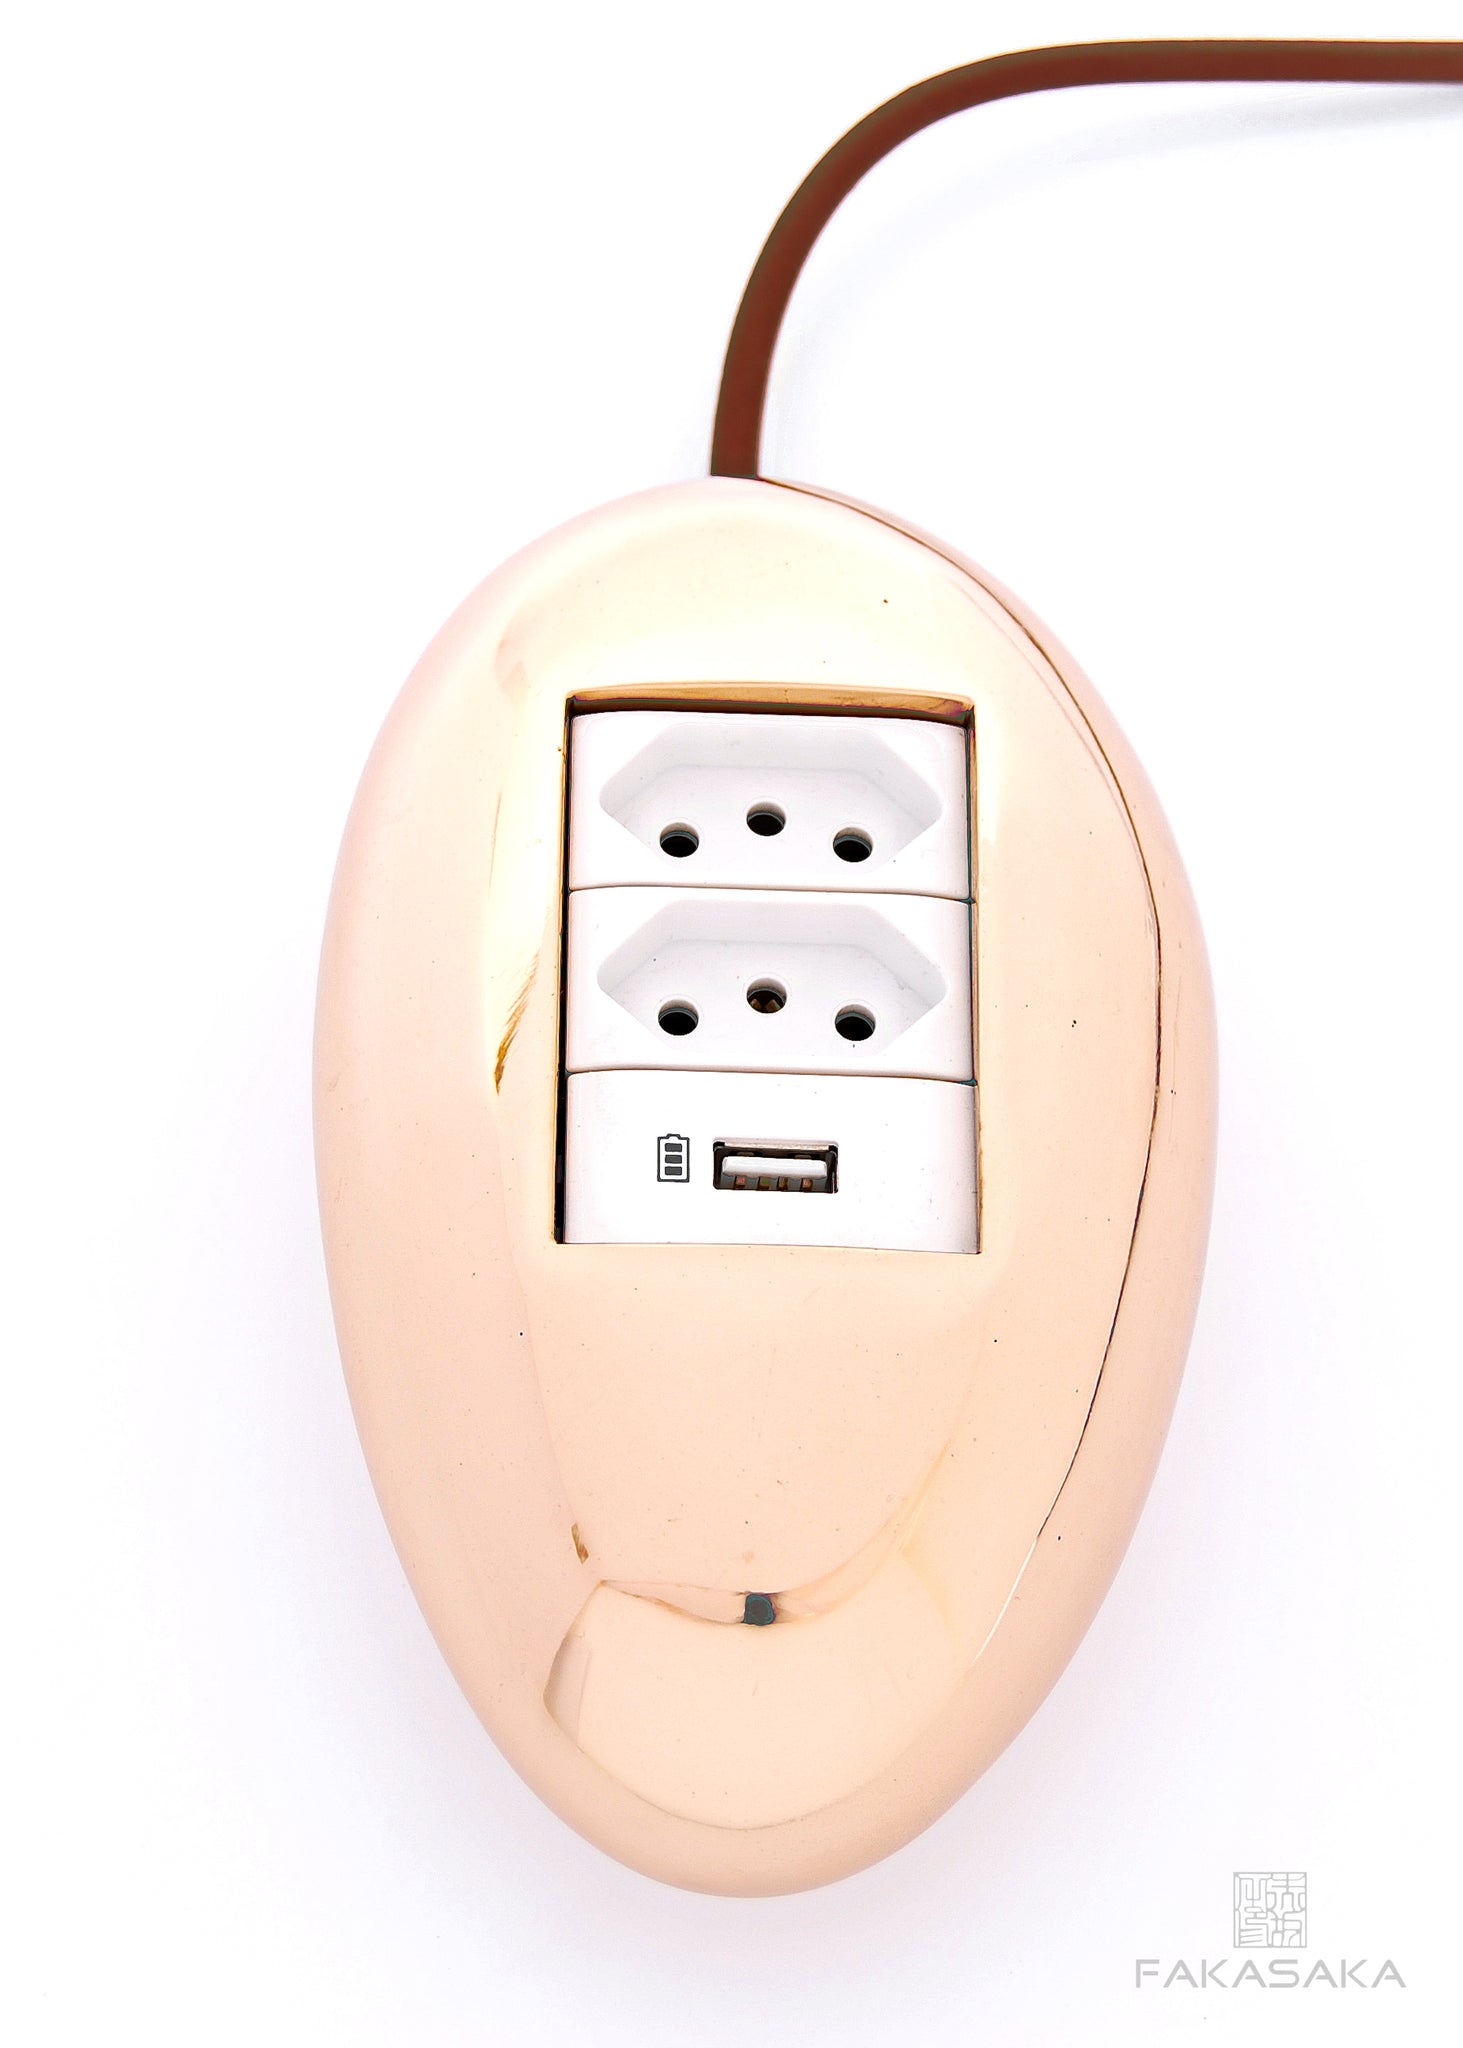 DYLAN<br><br>ELECTRICAL MODULE<br><br>2 OUTLETS + 1 USB PORT + EXTENSION CORD<br><br>POLISHED BRONZE